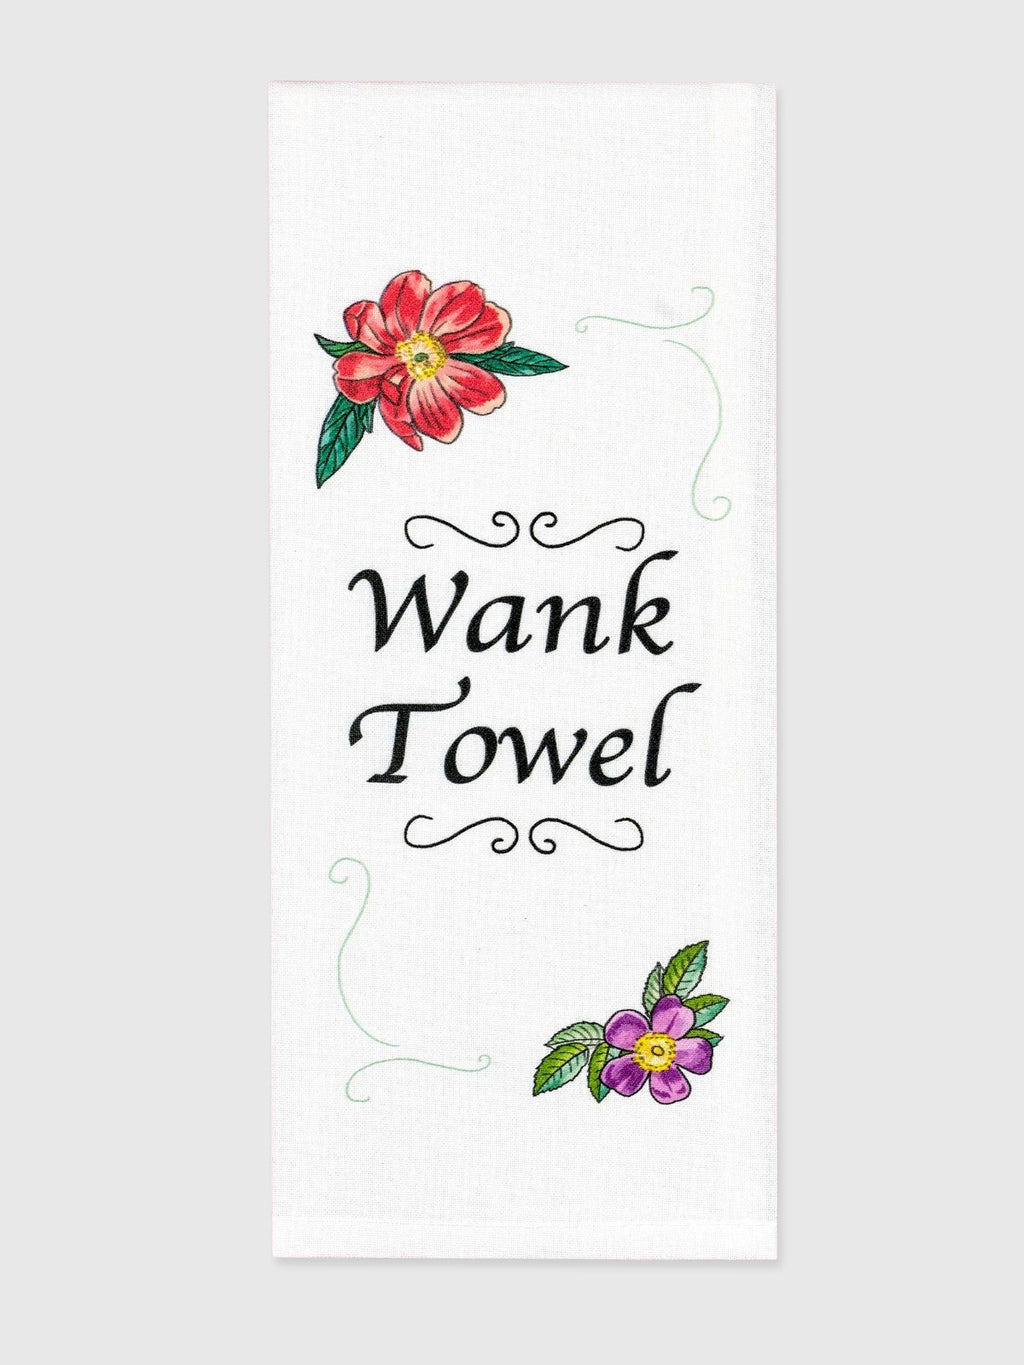 Funny Tea Towels - Wank towel